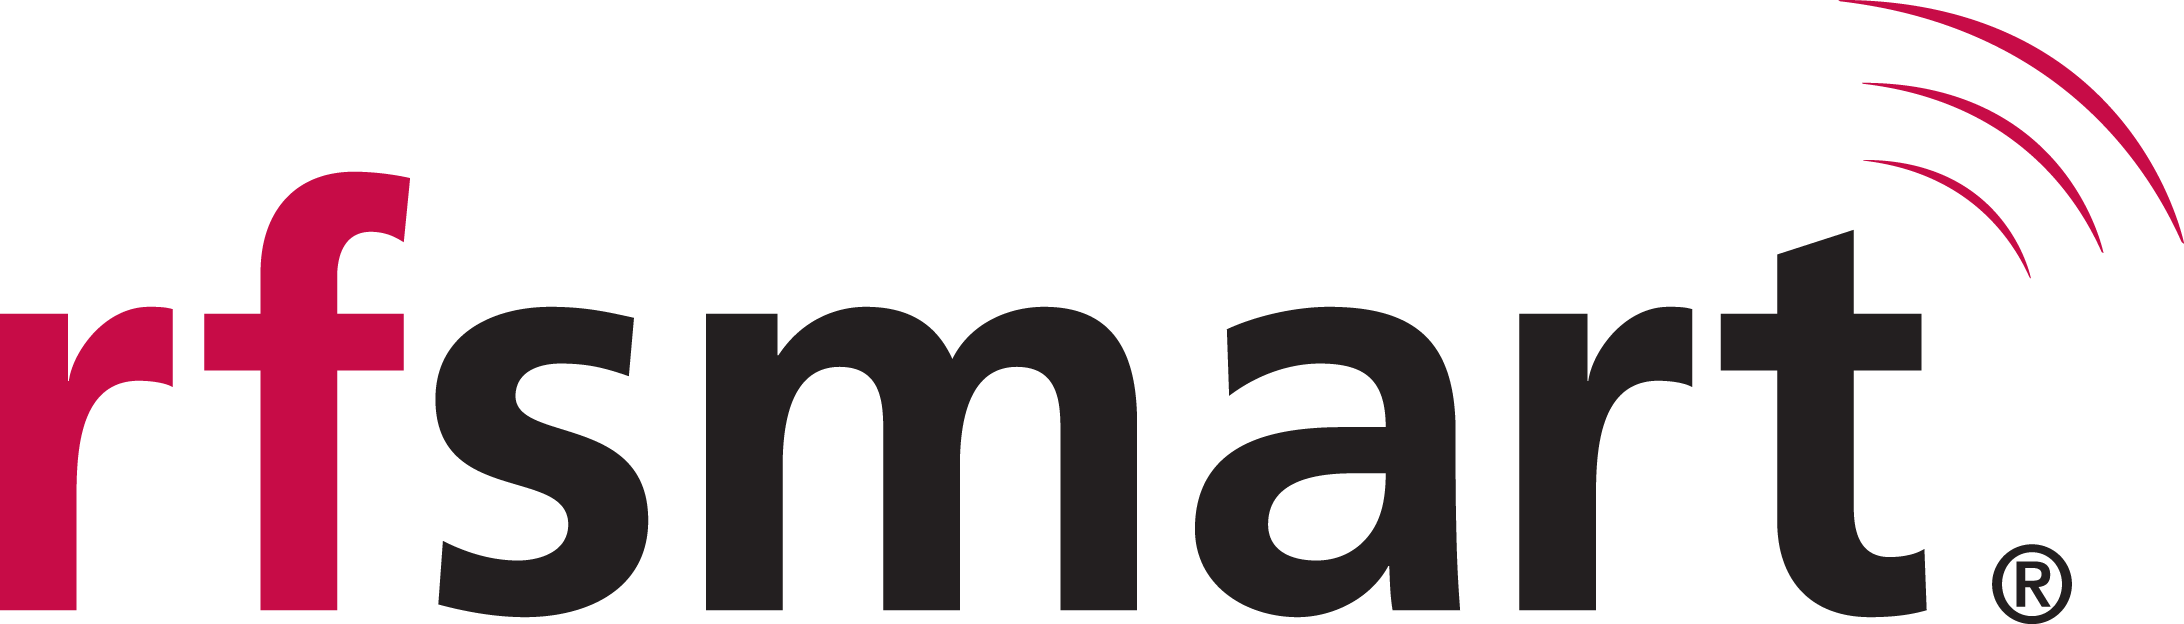 rfsmart_logo